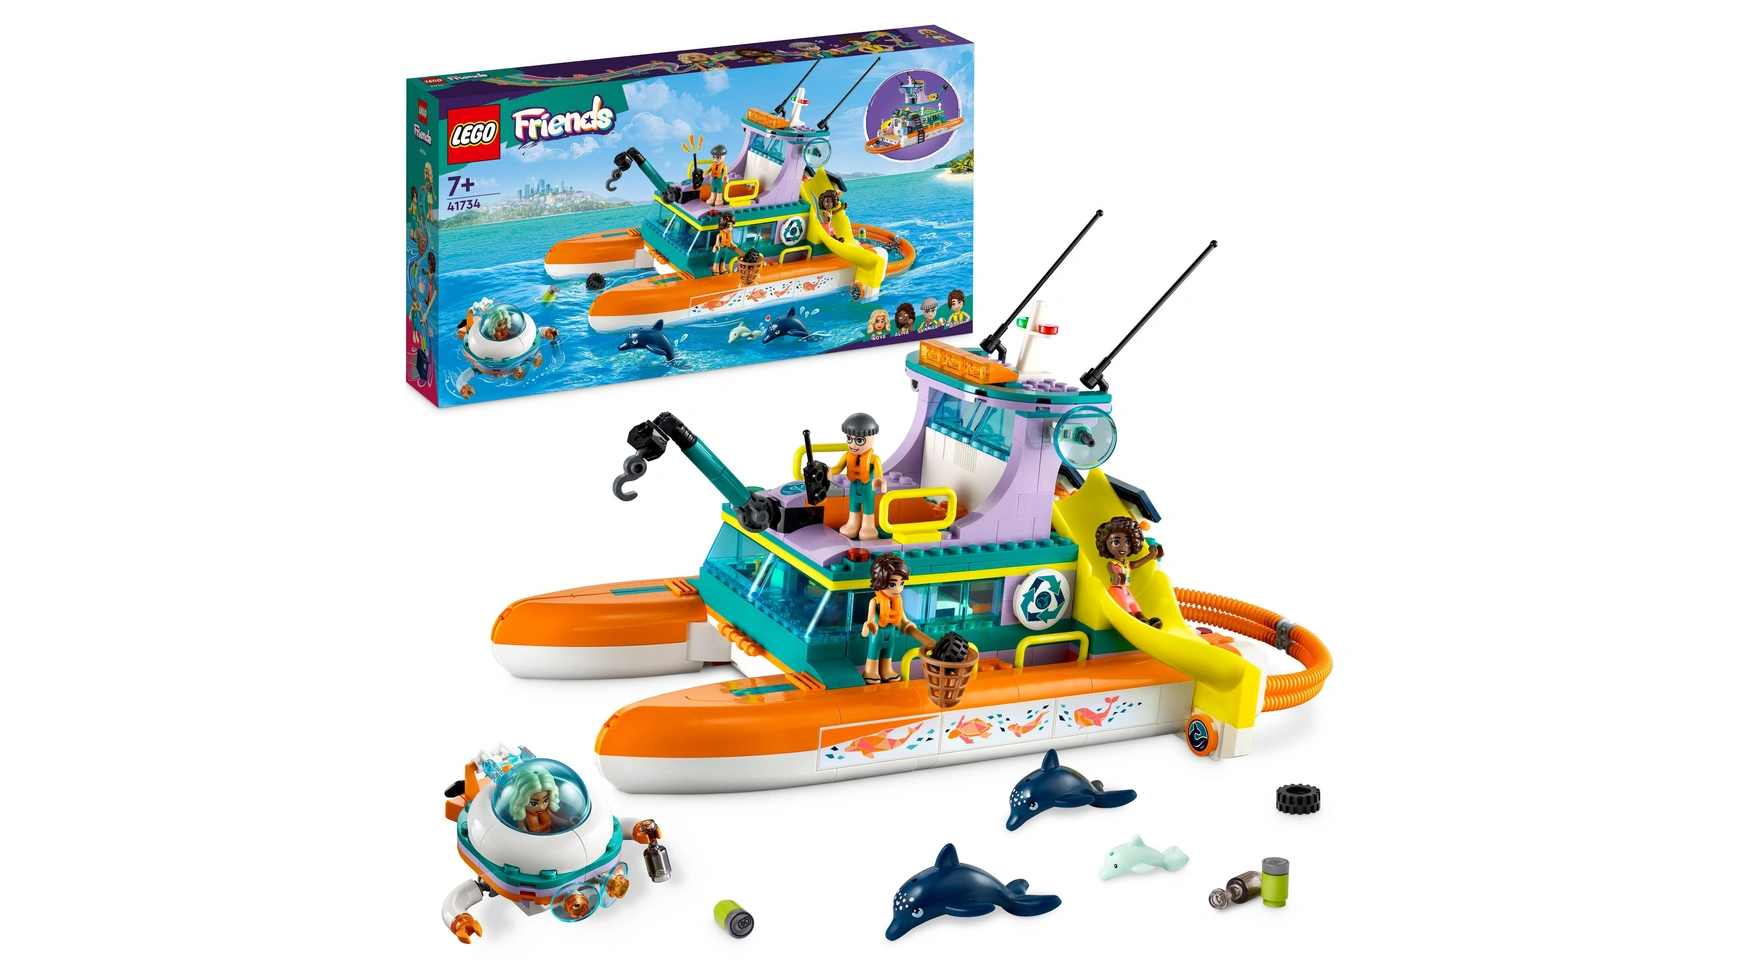 Lego Friends Набор Морской спасательный катер, игрушка с животными для детей